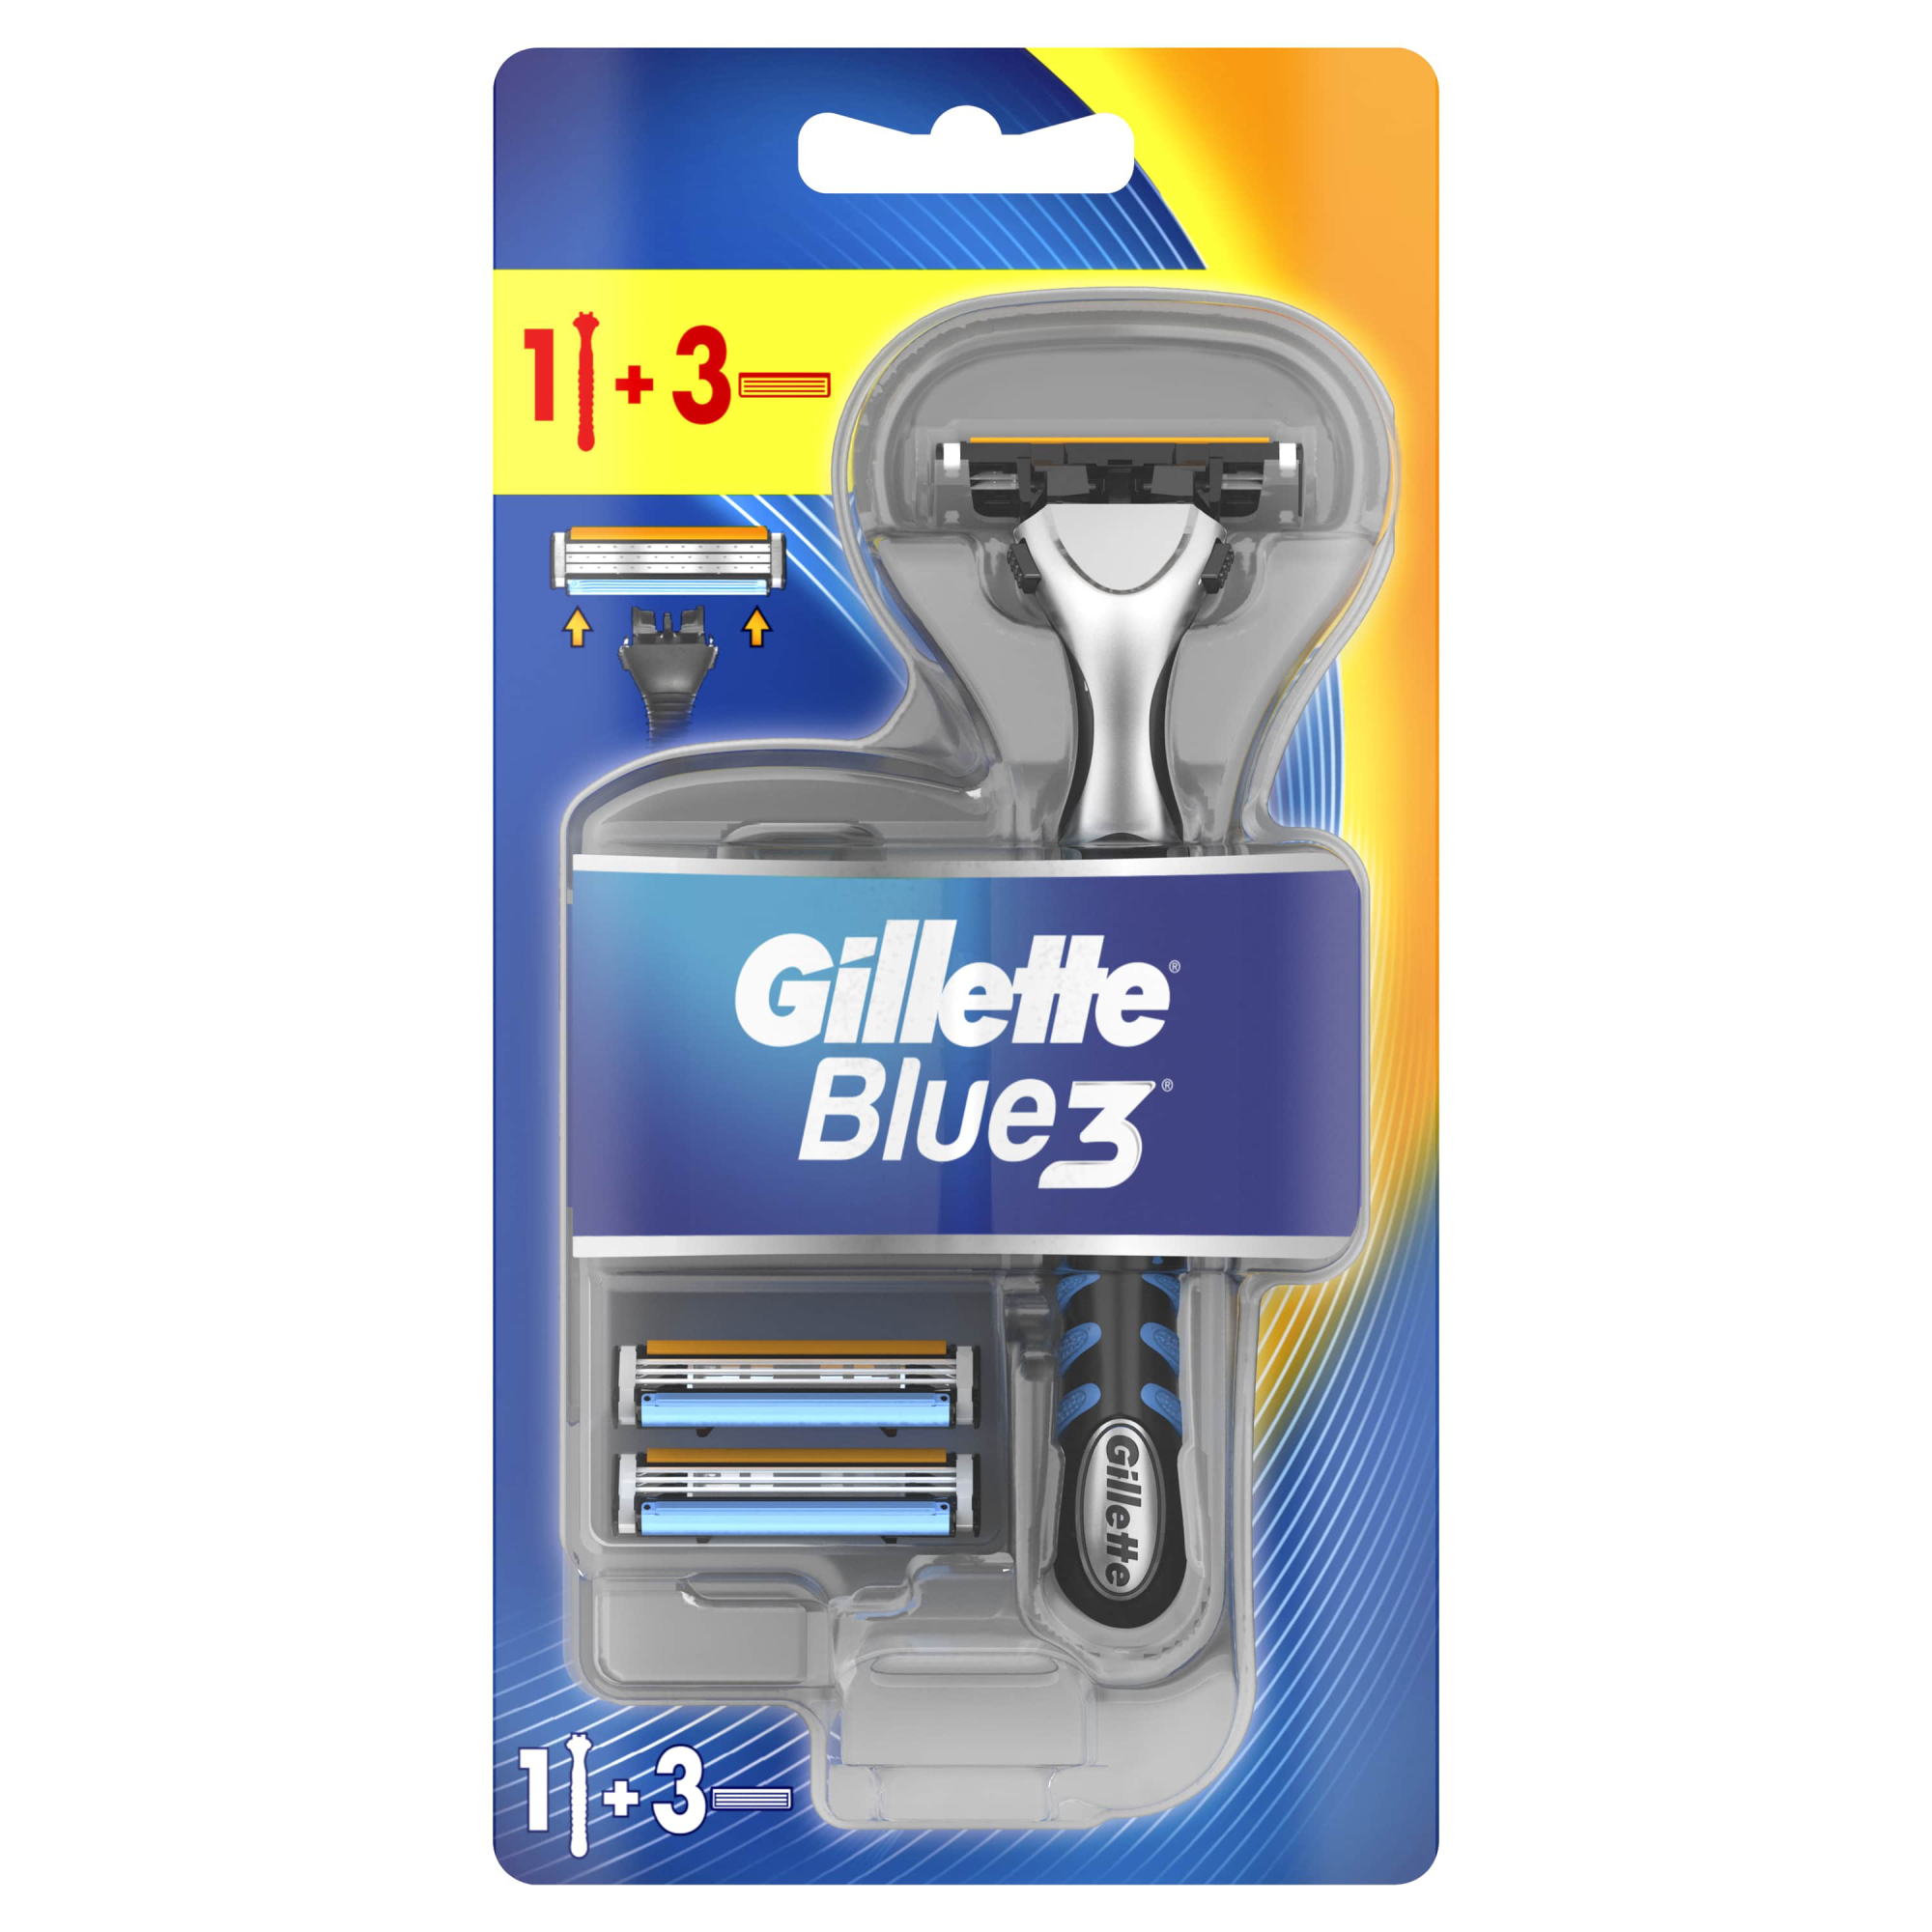 Мужская бритва Gillette Blue3, 3 кассеты, с 3 лезвиями, плавающая головка